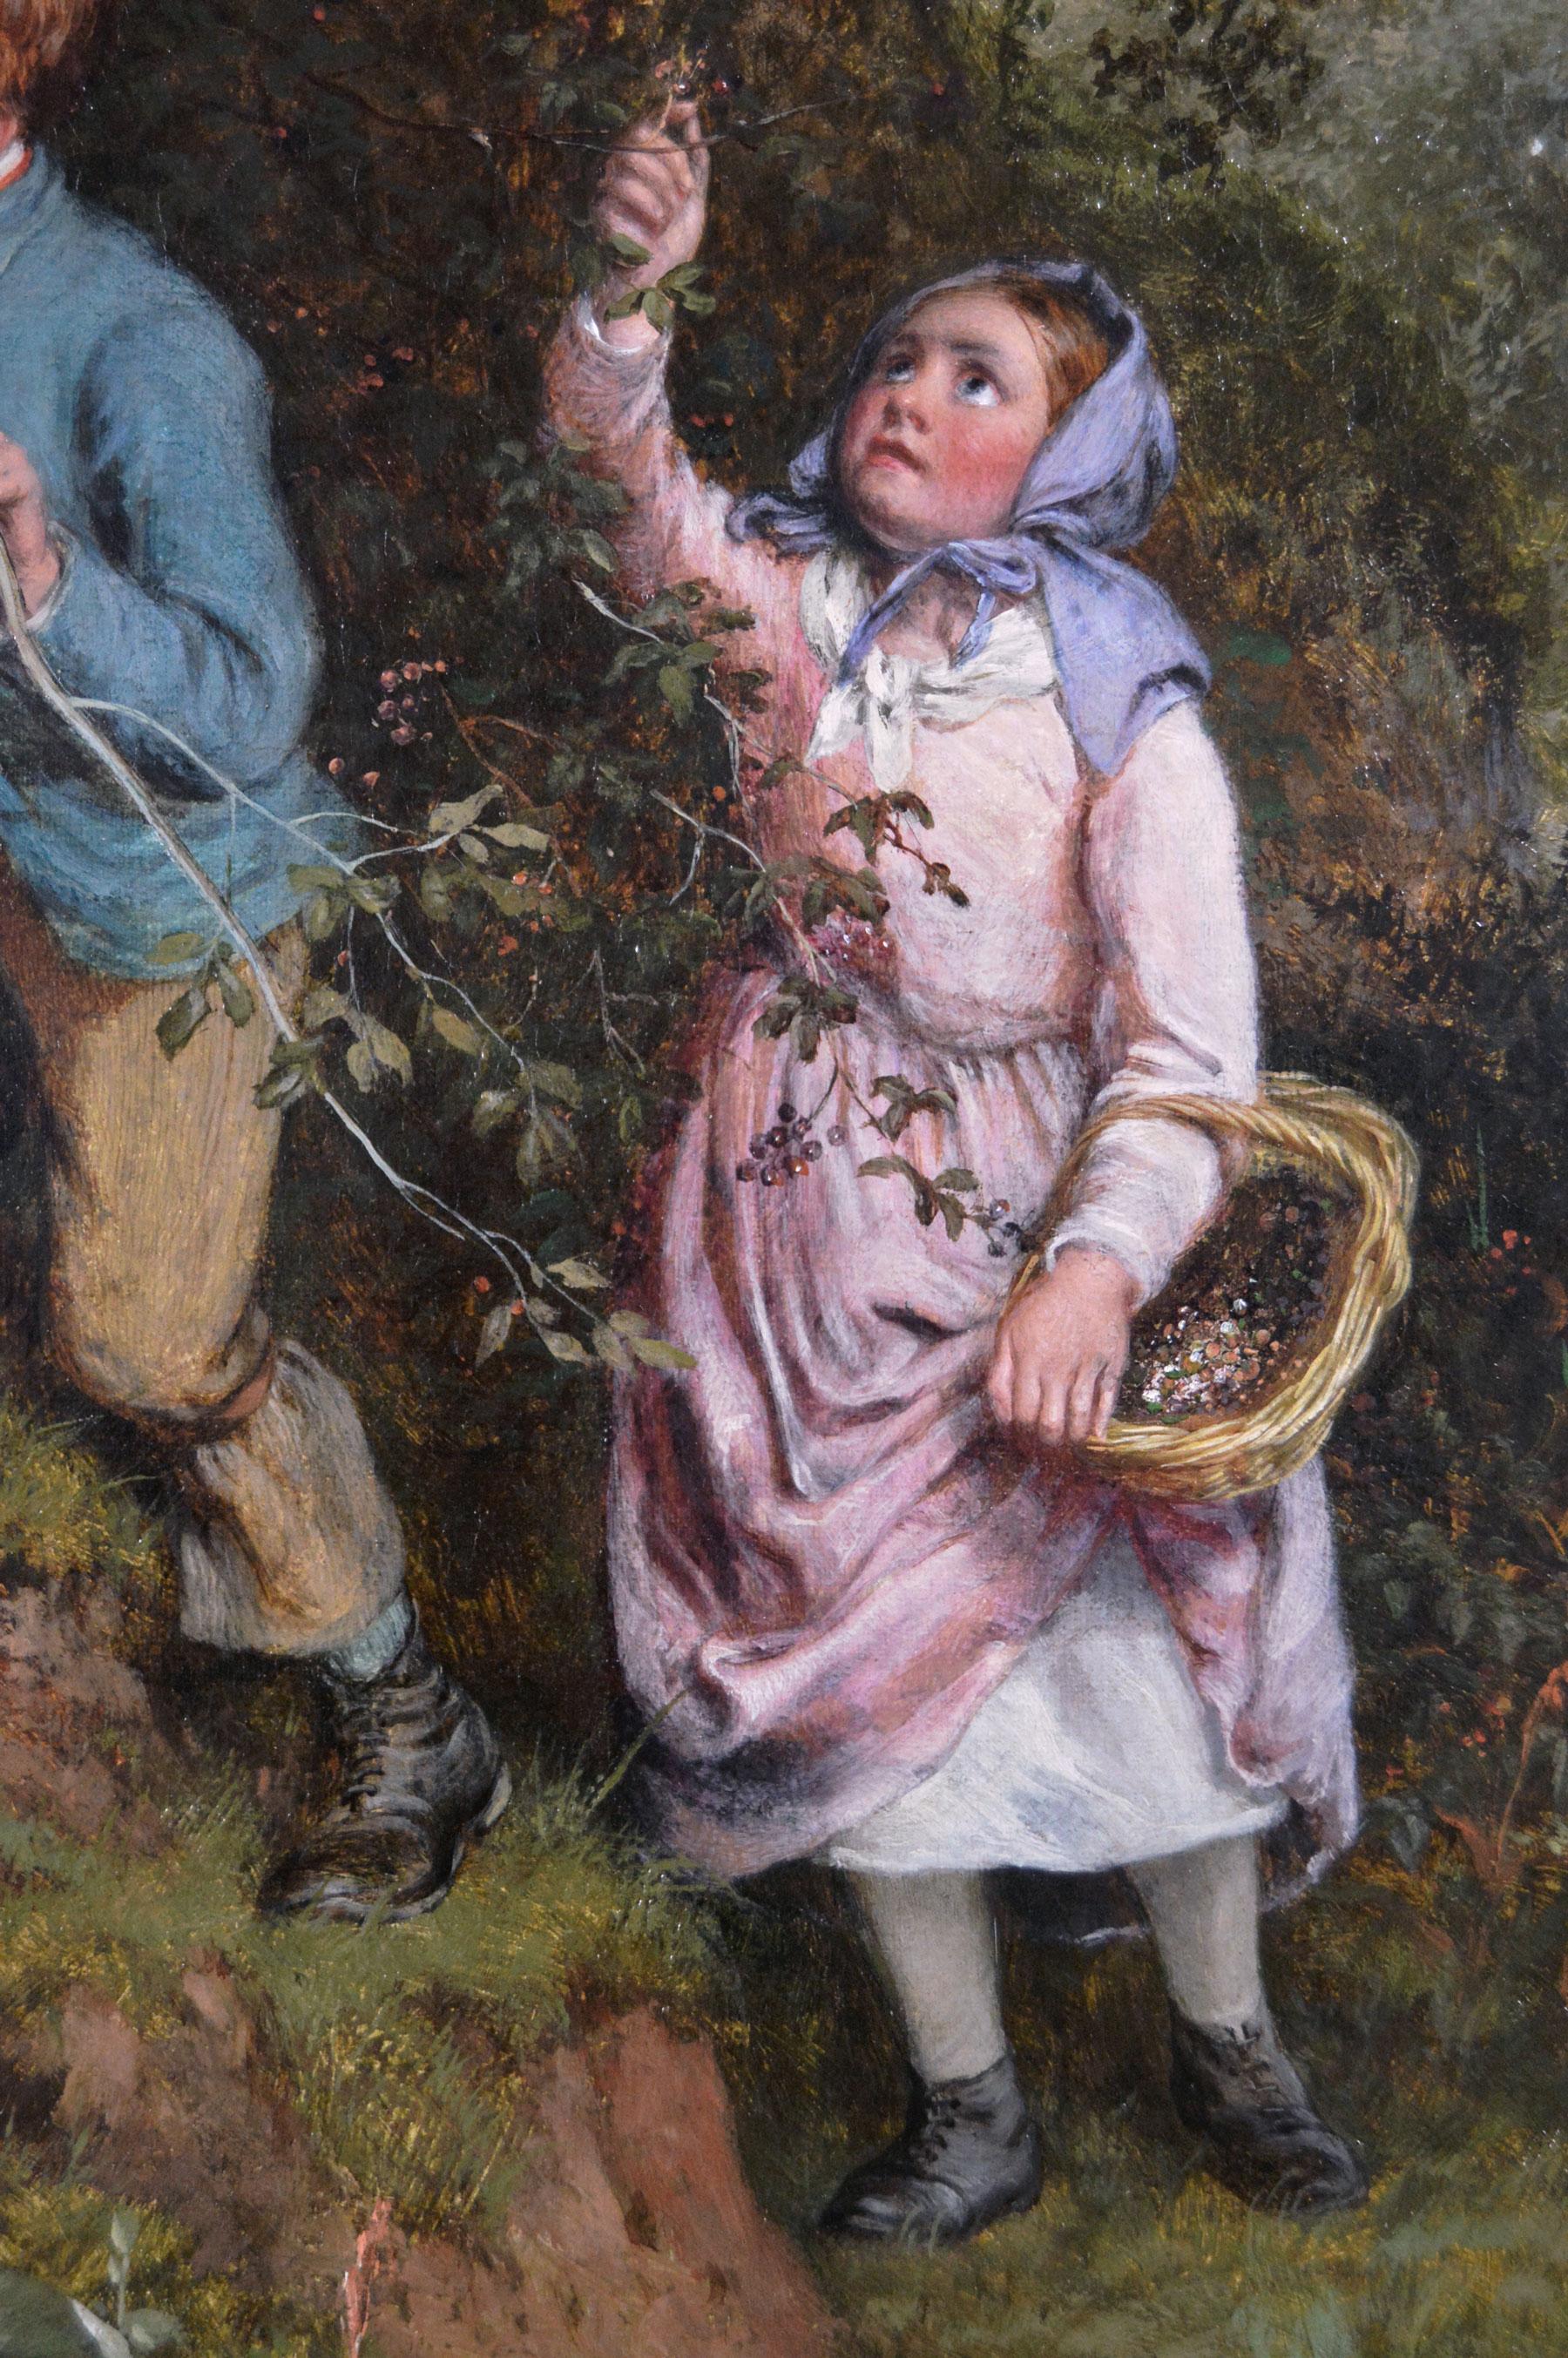 William Bromley 
Britannique, (1816-1890)
Cueillir les baies d'aubépine
Huile sur toile, signée 
Taille de l'image : 27.5 pouces x 35.5 pouces 
Dimensions, y compris le cadre : 33,5 pouces x 41,5 pouces

Une belle peinture de trois enfants cueillant